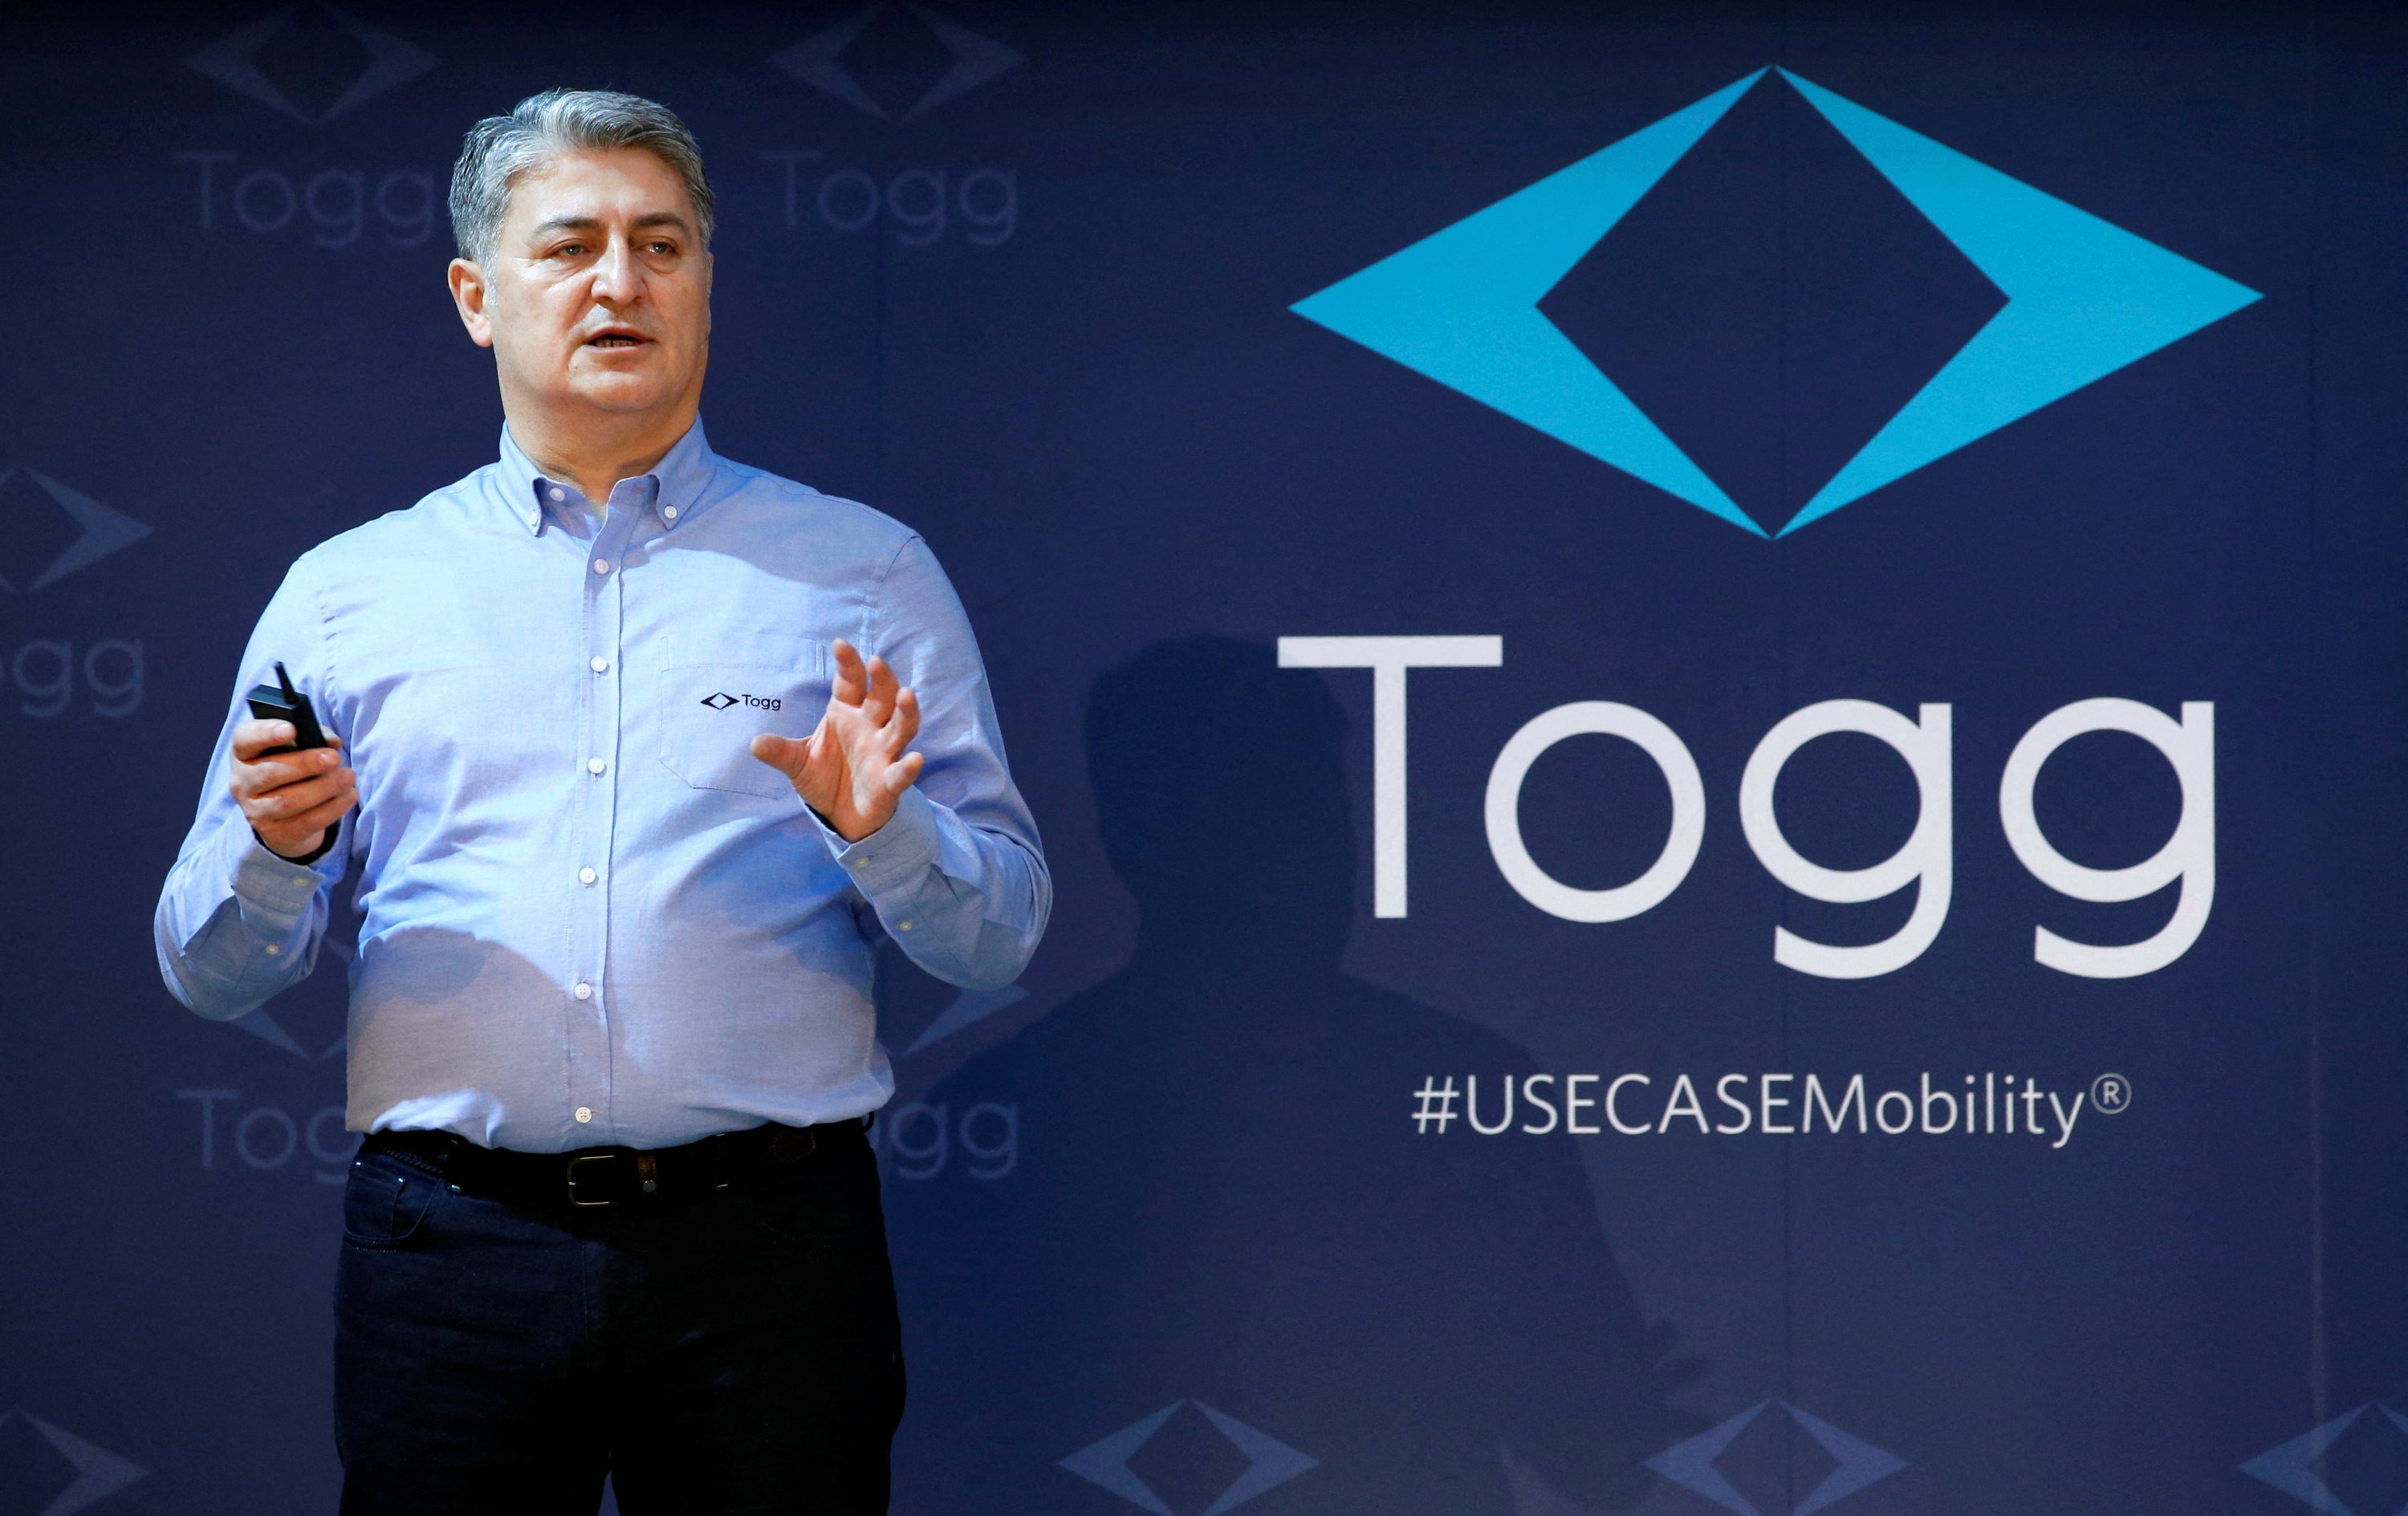 Mehmet Gürcan Karakaş, CEO of Togg, speaks before unveiling Togg's 